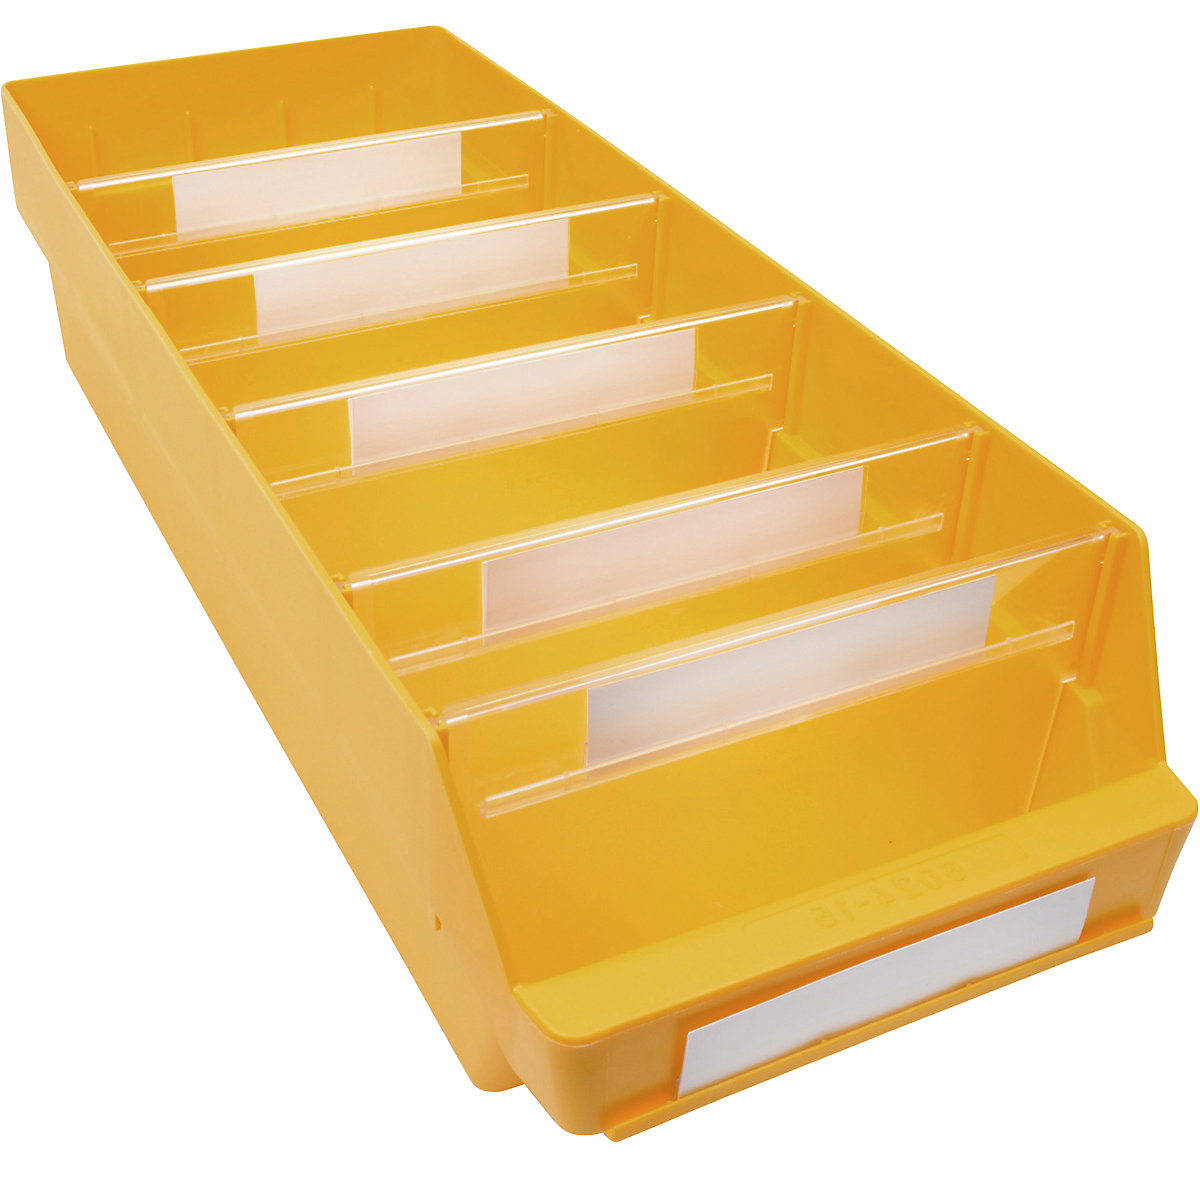 Regalkasten aus hochschlagfestem Polypropylen STEMO, gelb, LxBxH 600 x 240 x 150 mm, VE 10 Stk-8